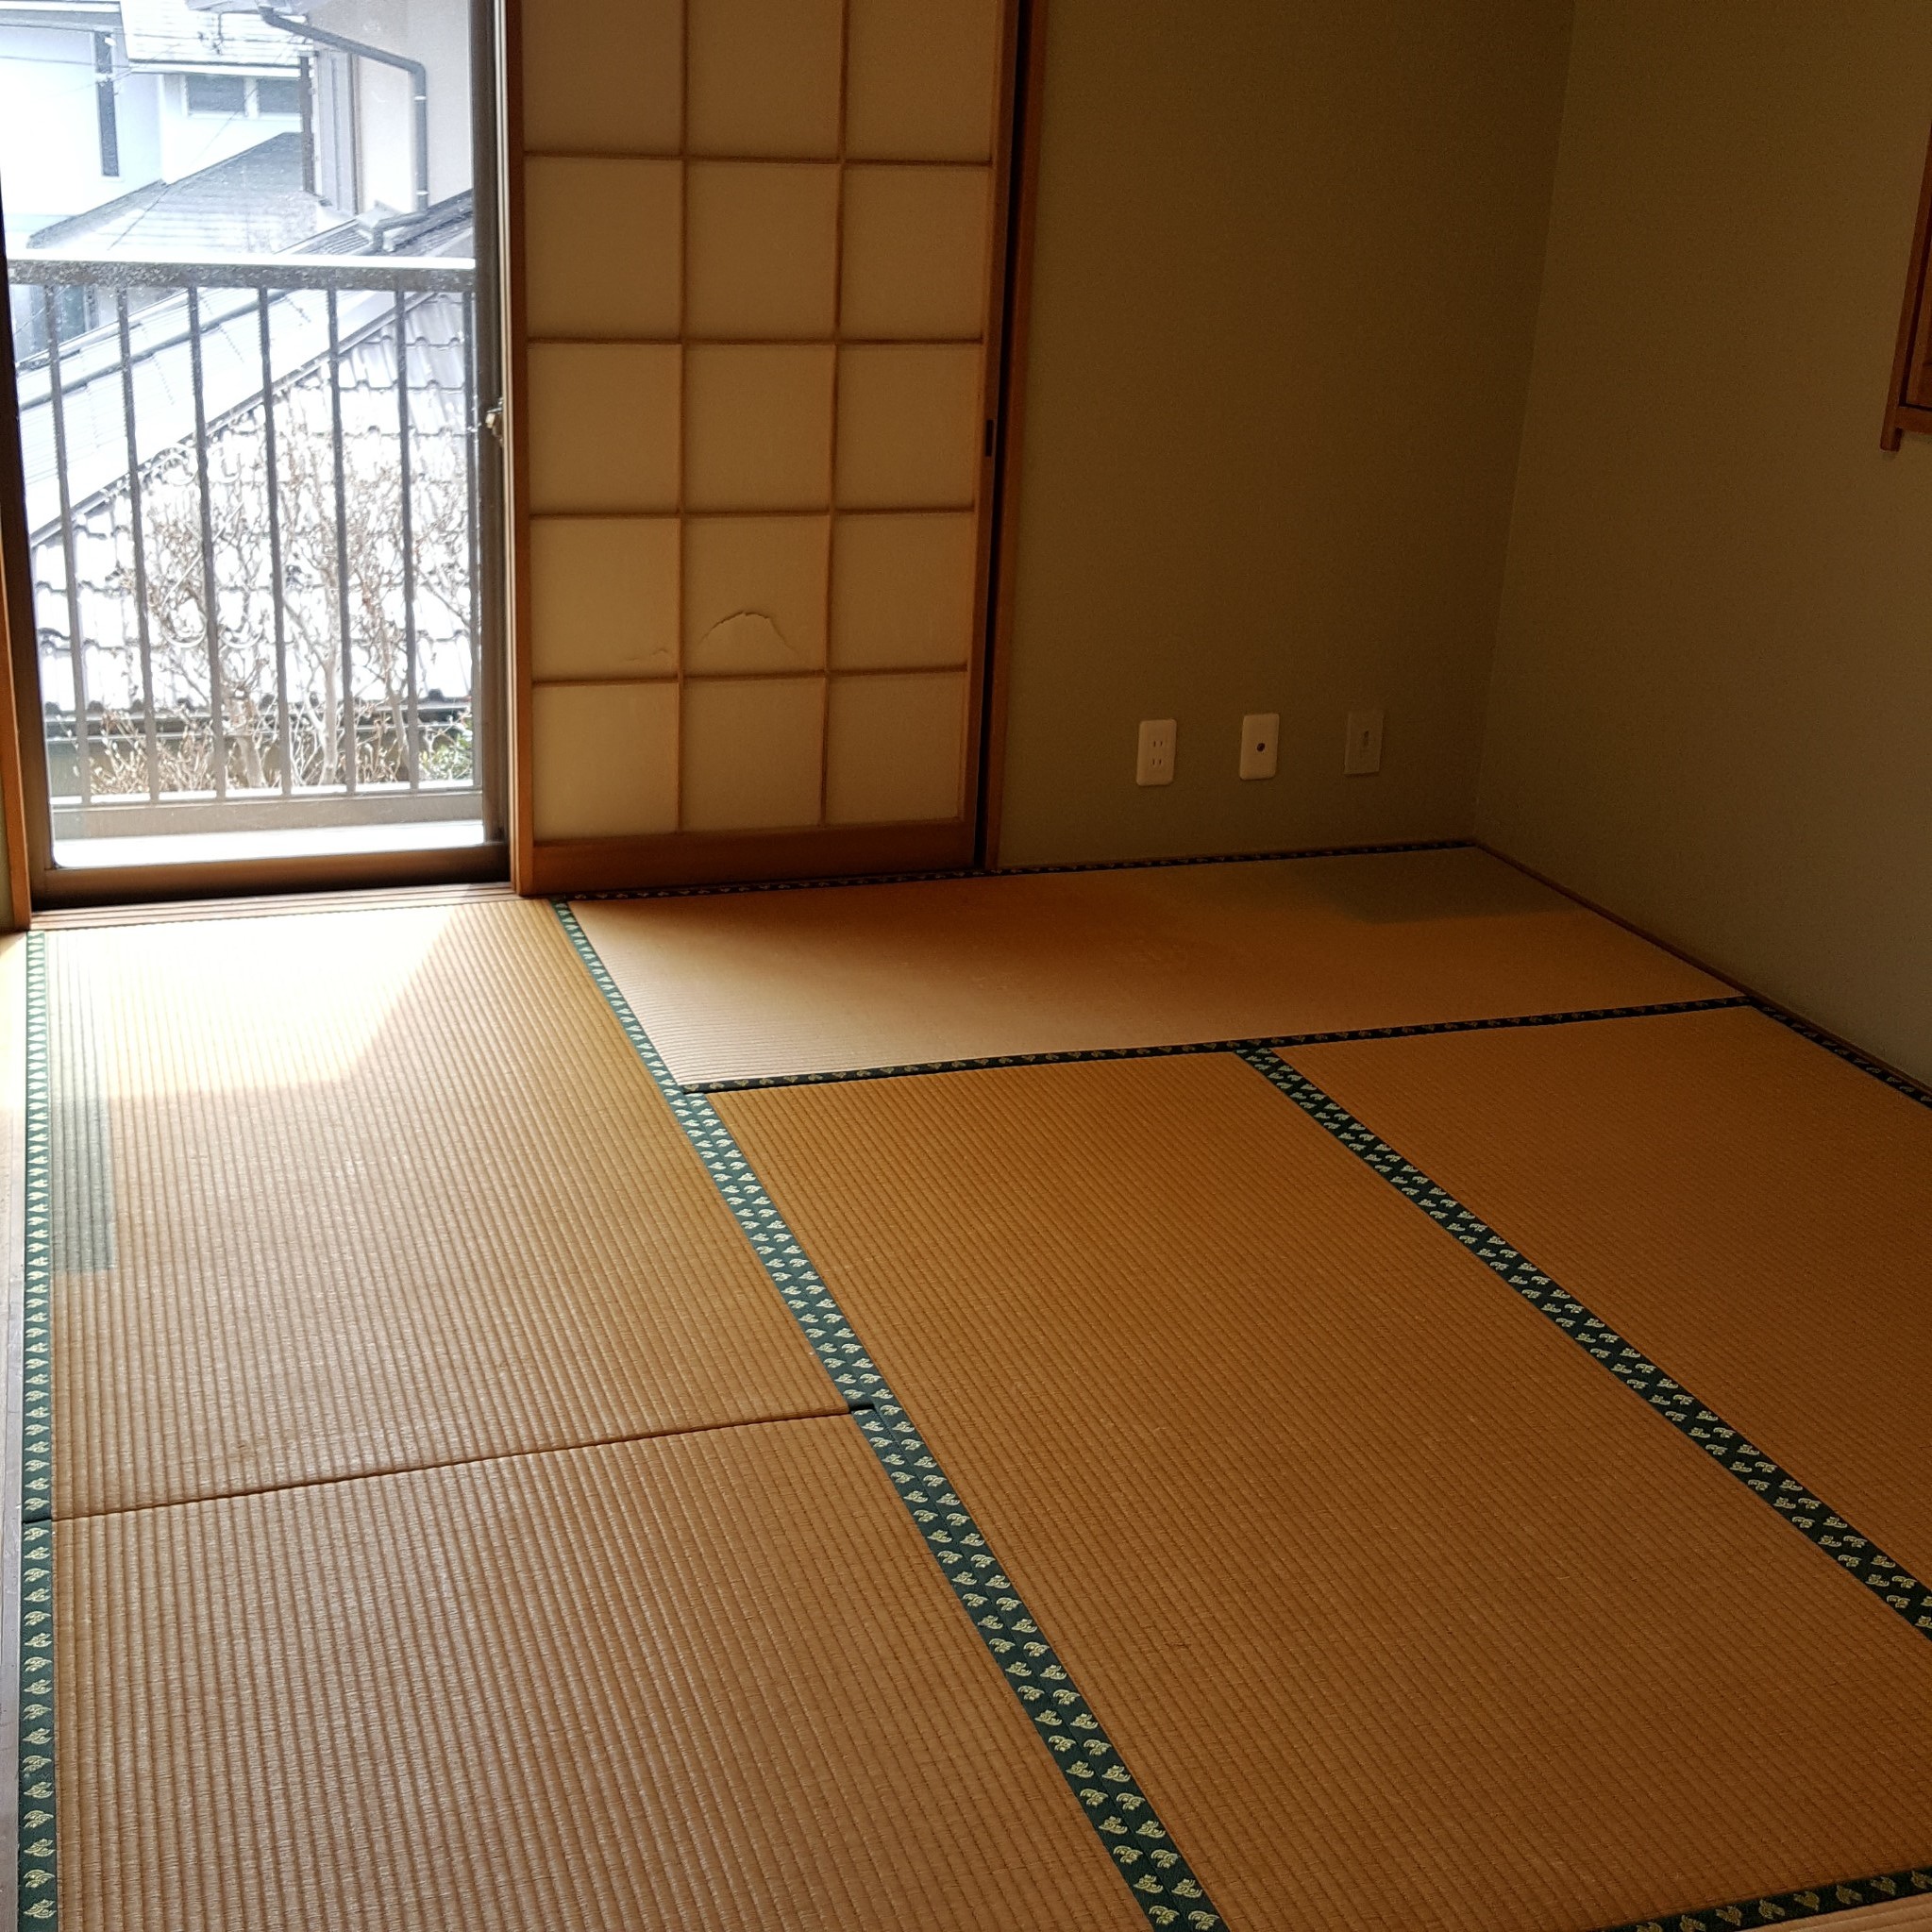 神奈川県横浜市 一戸建て屋根裏部屋の整理整頓と不要品回収